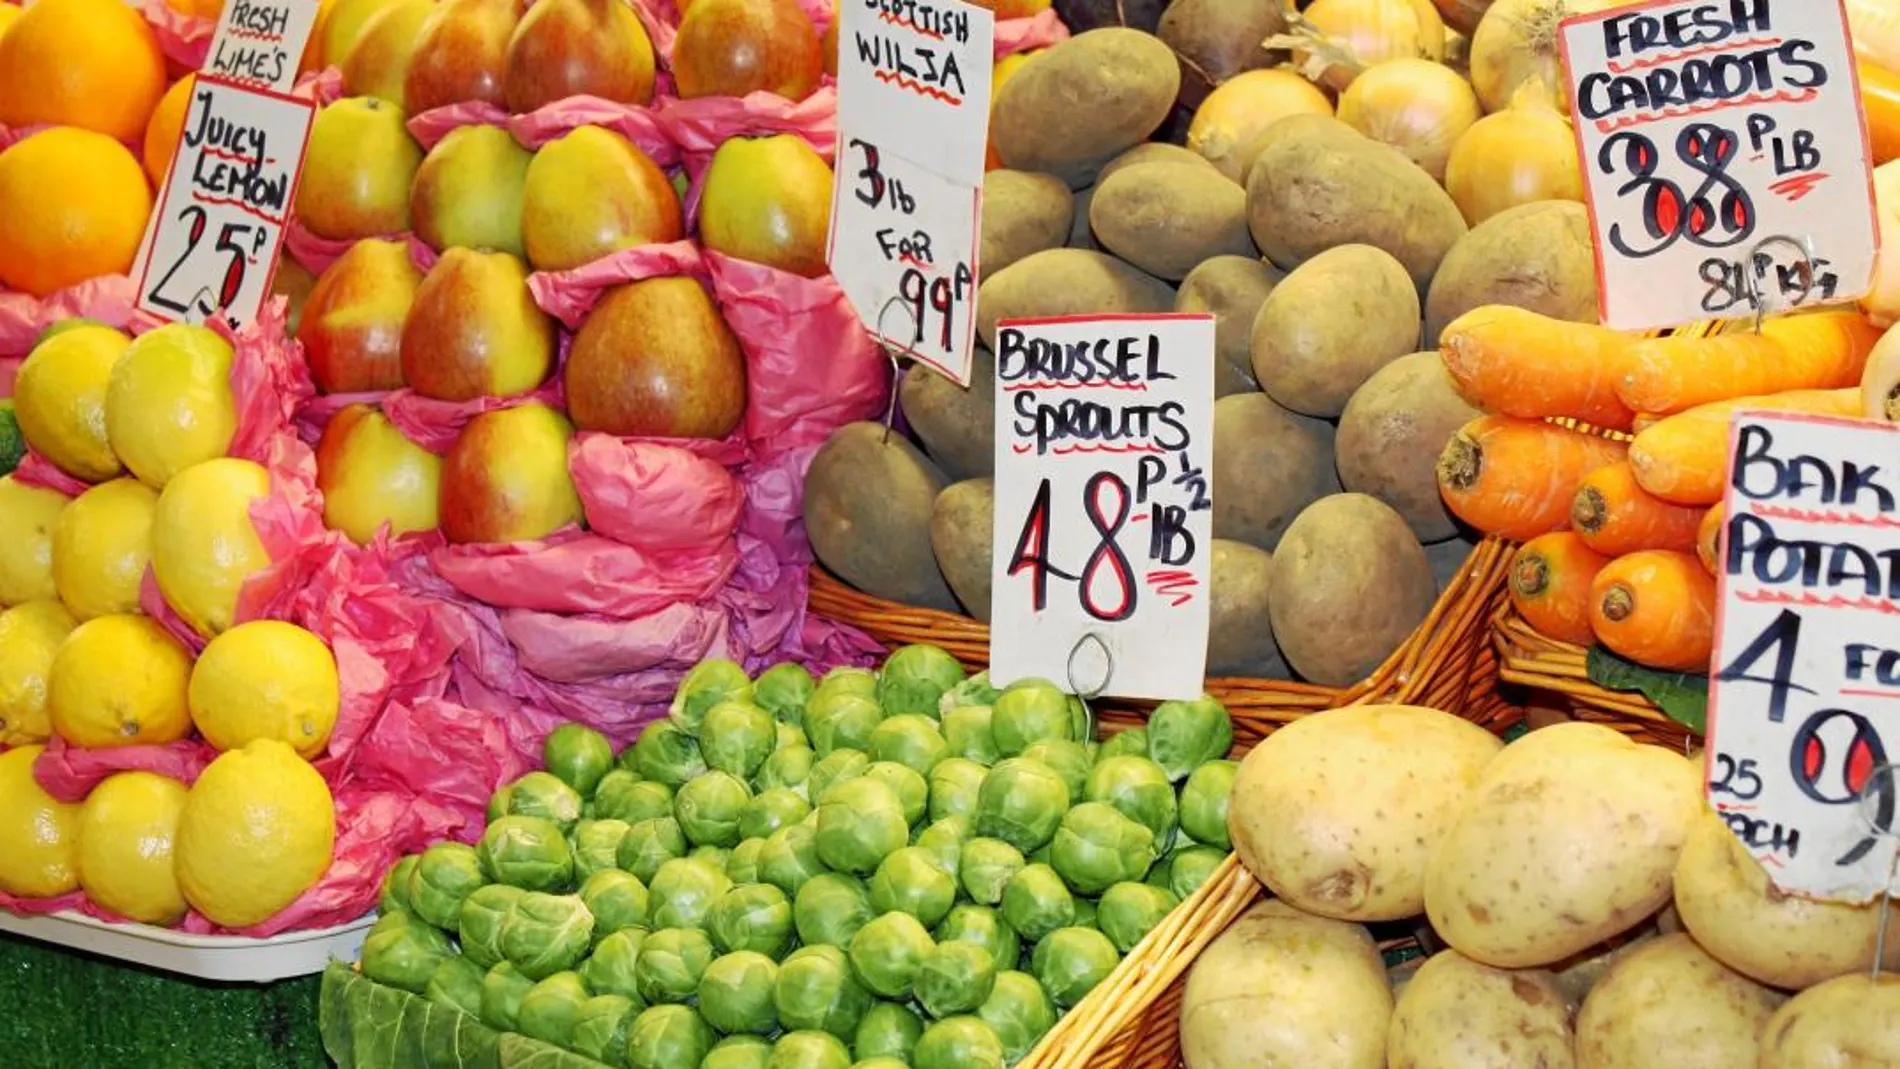 Bandejas de frutas importadasde la UE en un supermercado británico